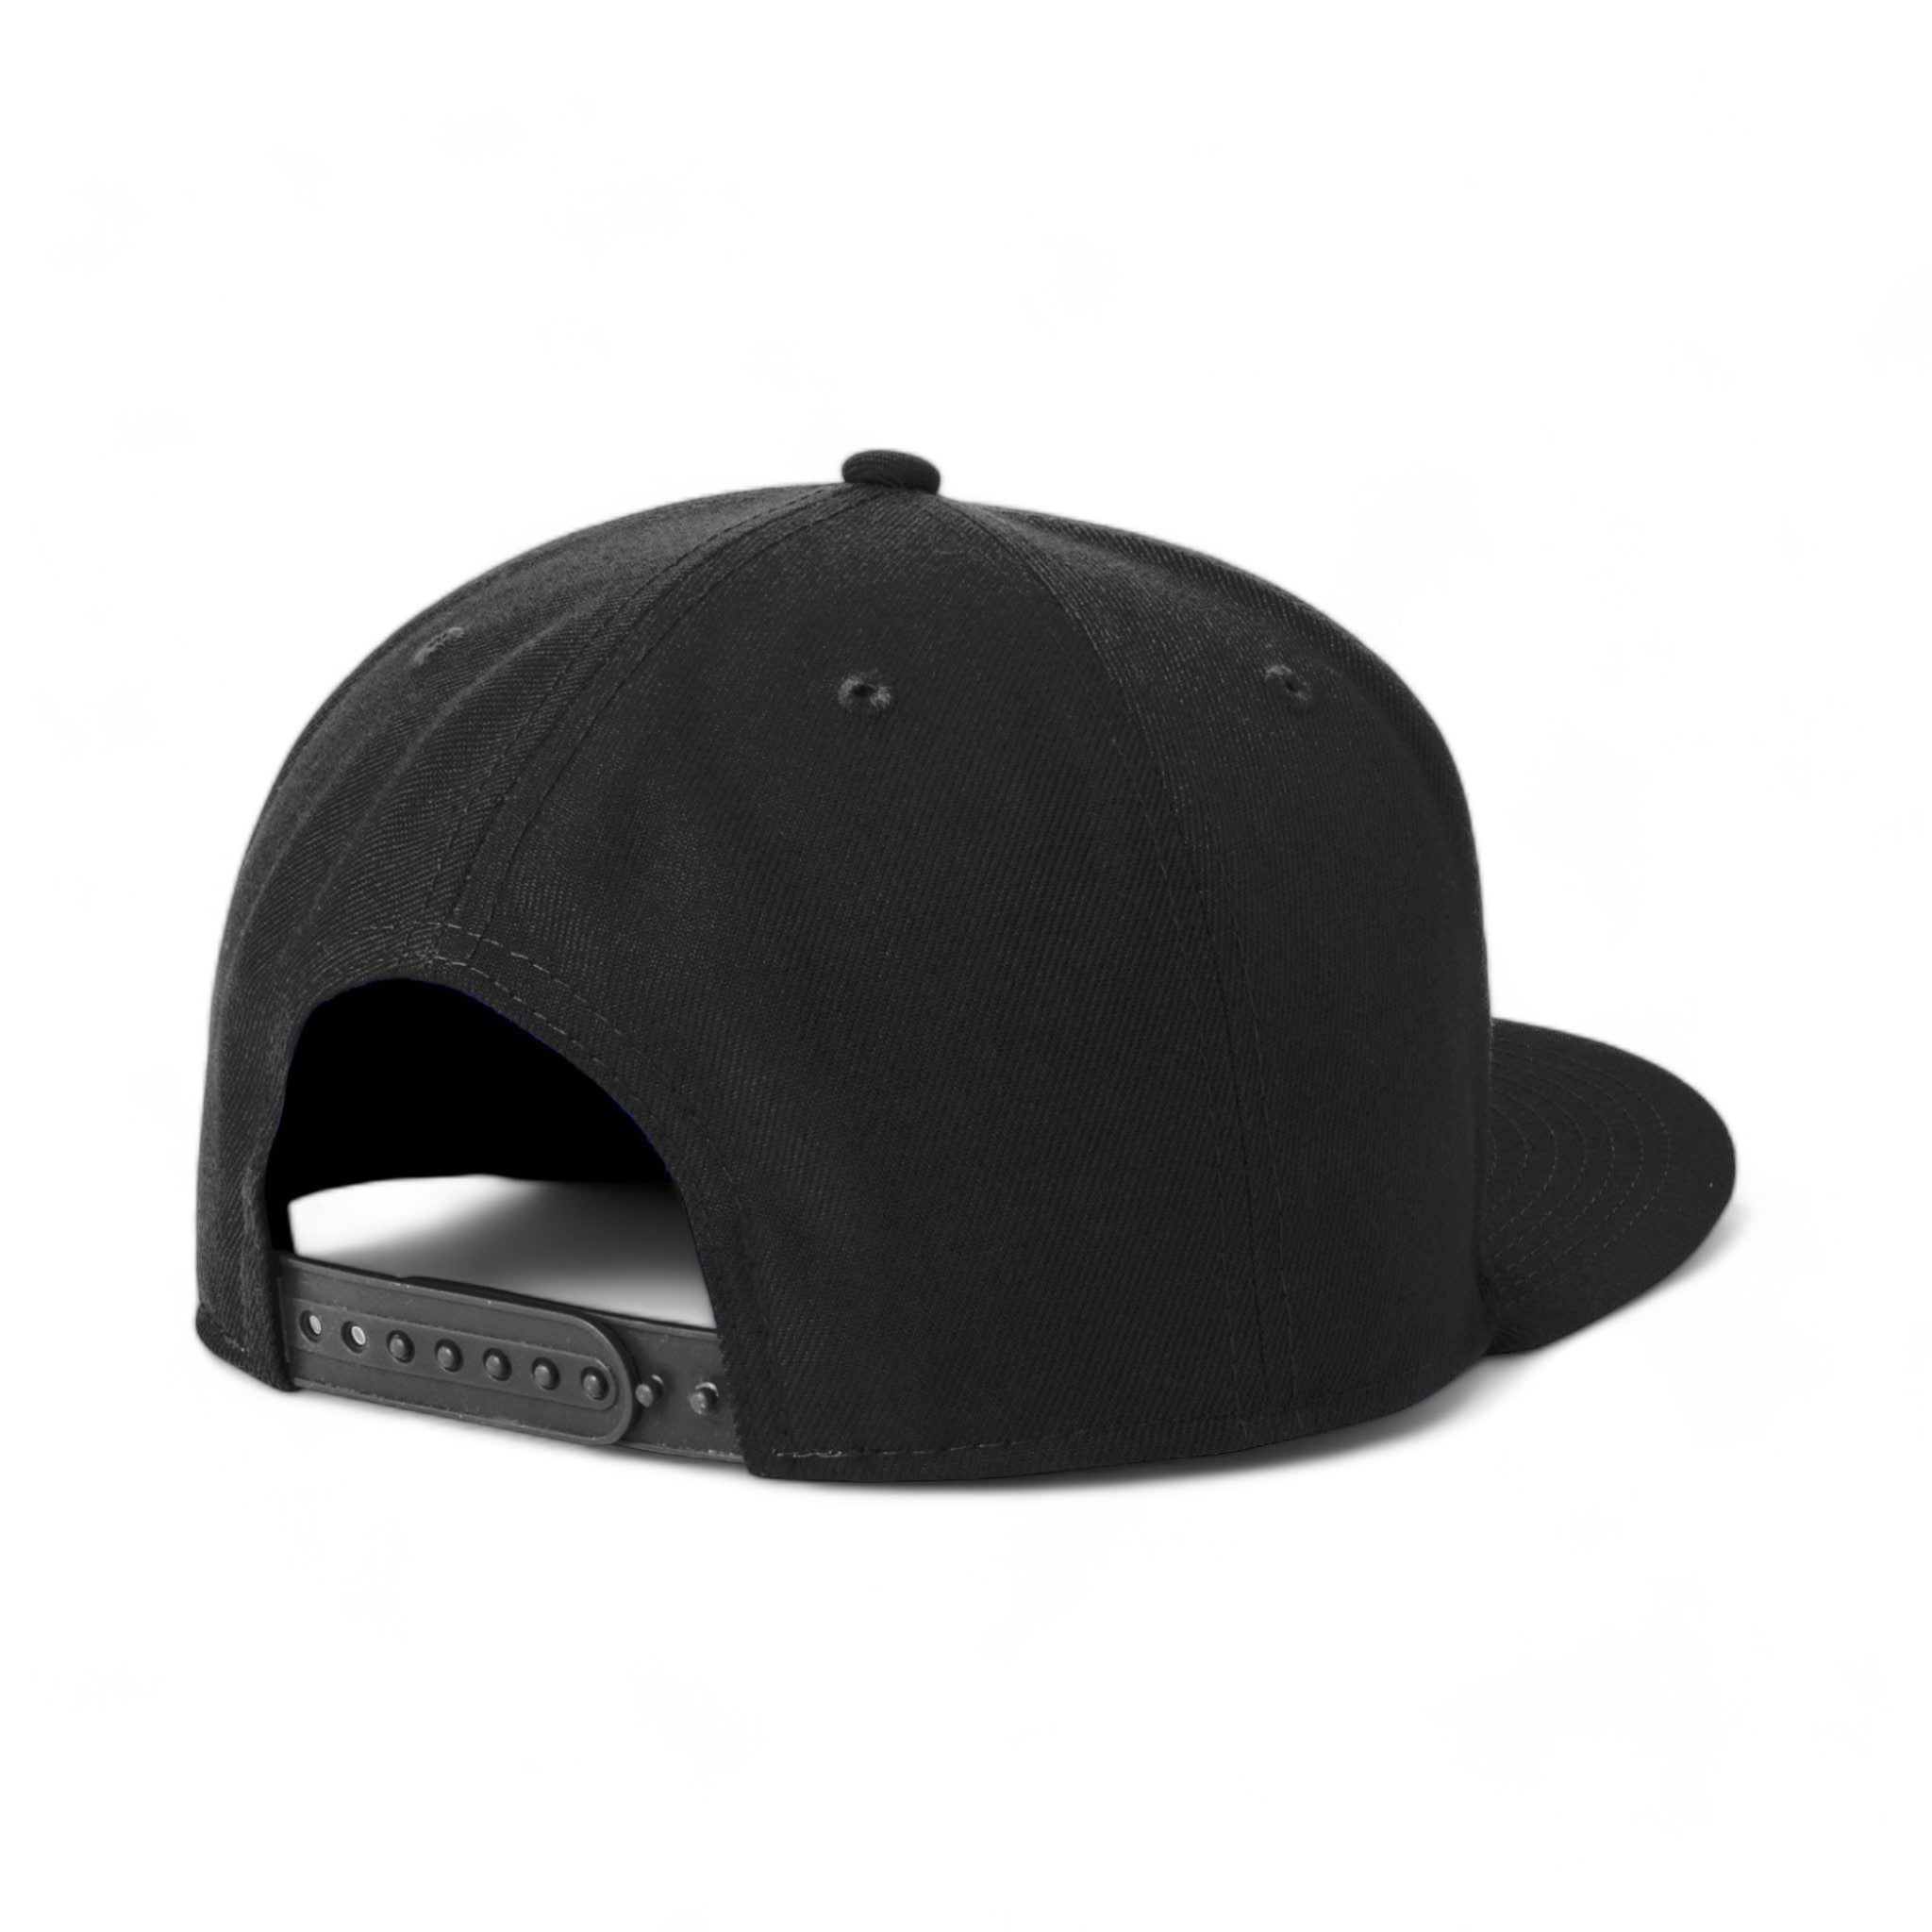 Back view of New Era NE4020 custom hat in black